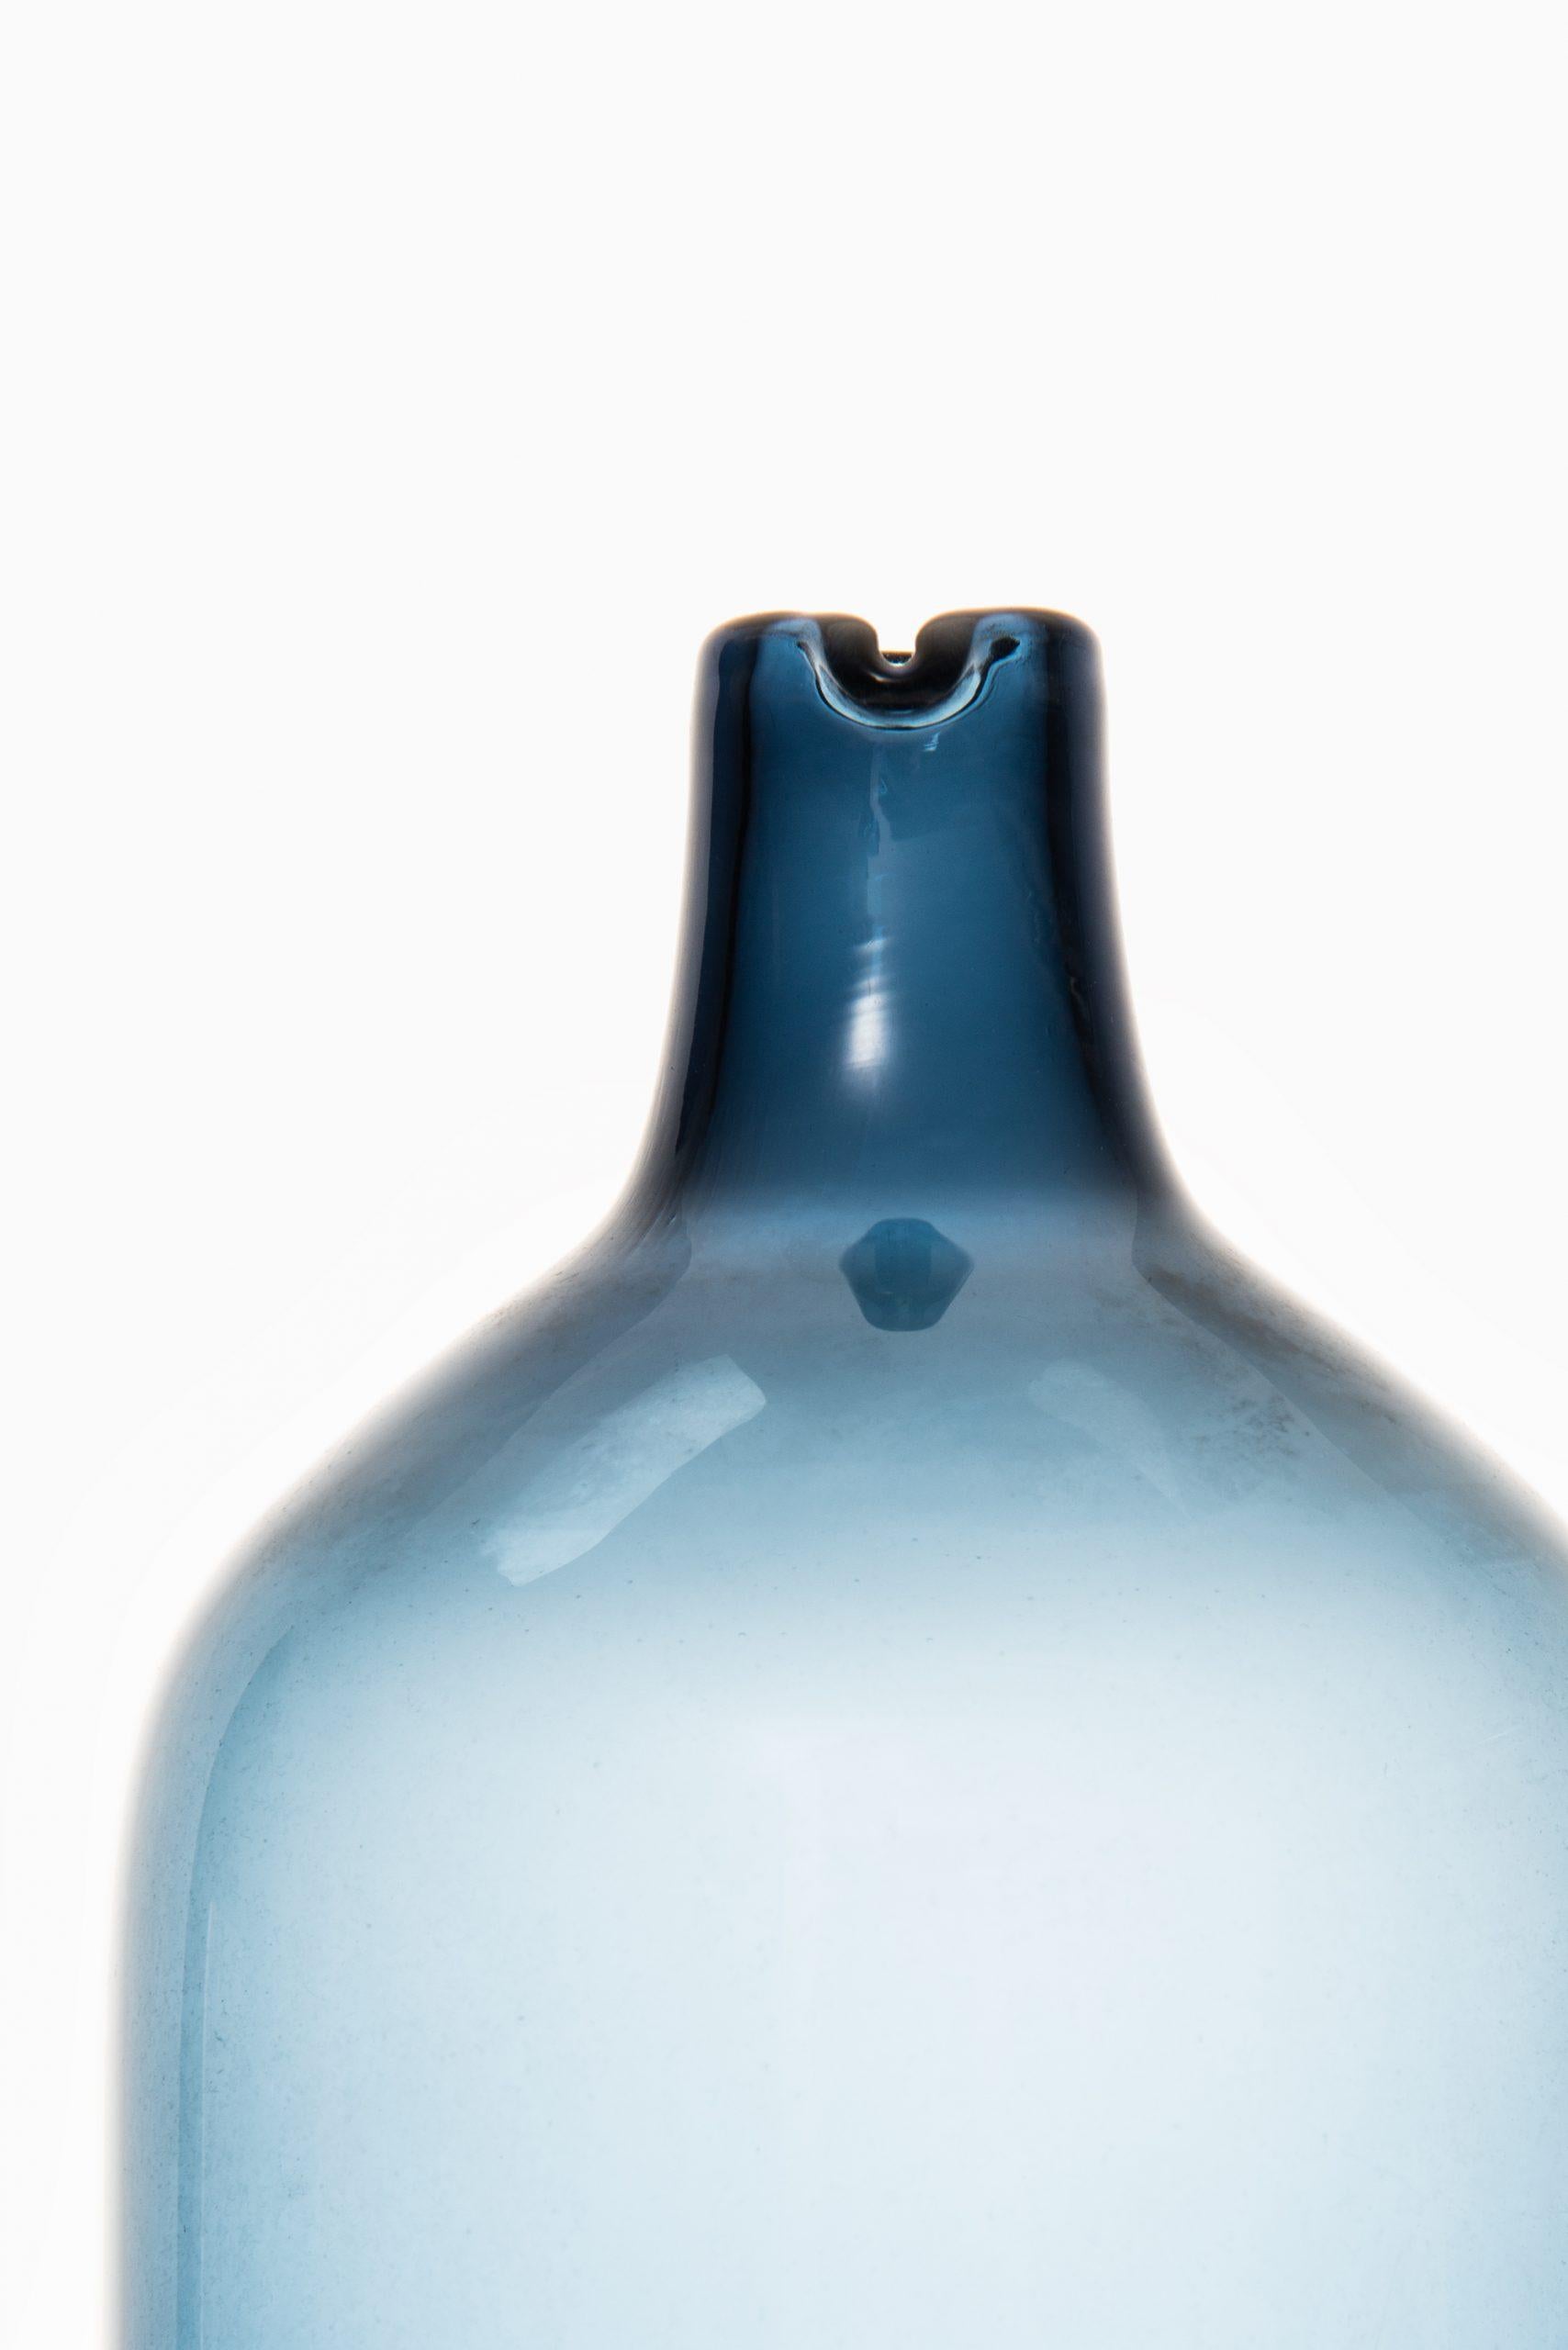 Glasflasche / Vase Modell Pullo / Vogelvase entworfen von Timo Sarpaneva. Produziert von Iittala in Finnland. 